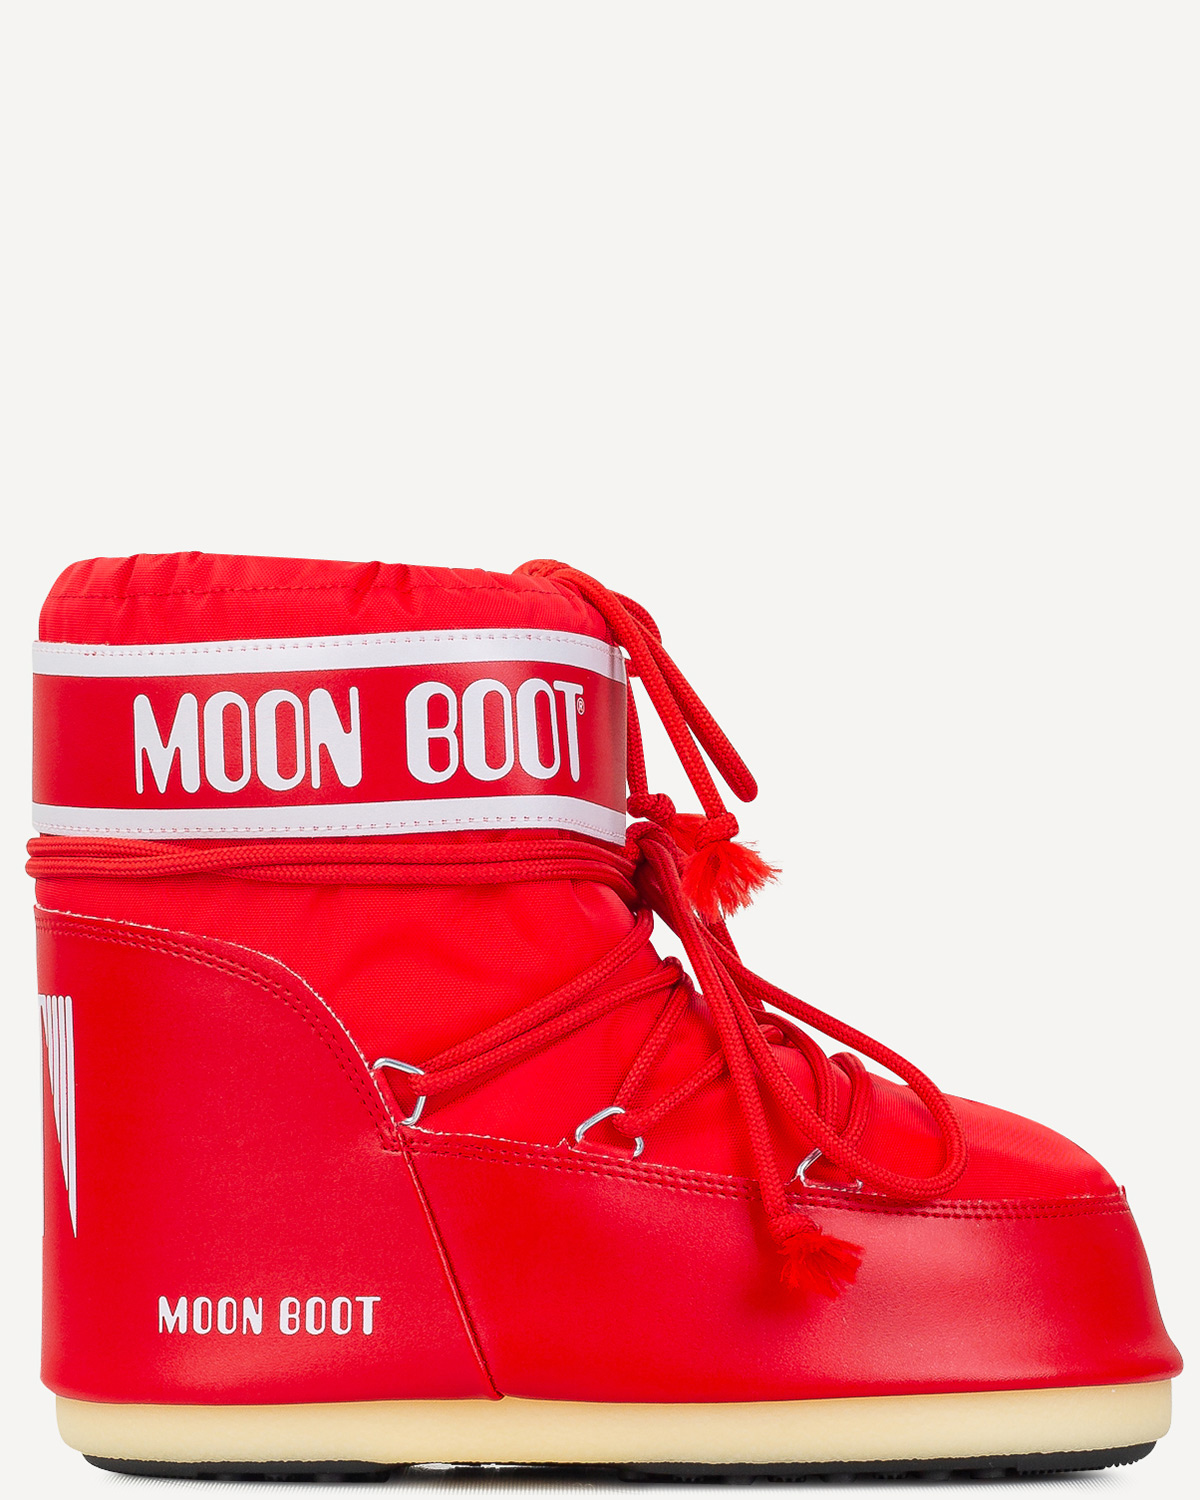 Γυναίκα - Μπότες - Μποτάκια - Moonboot Κόκκινο